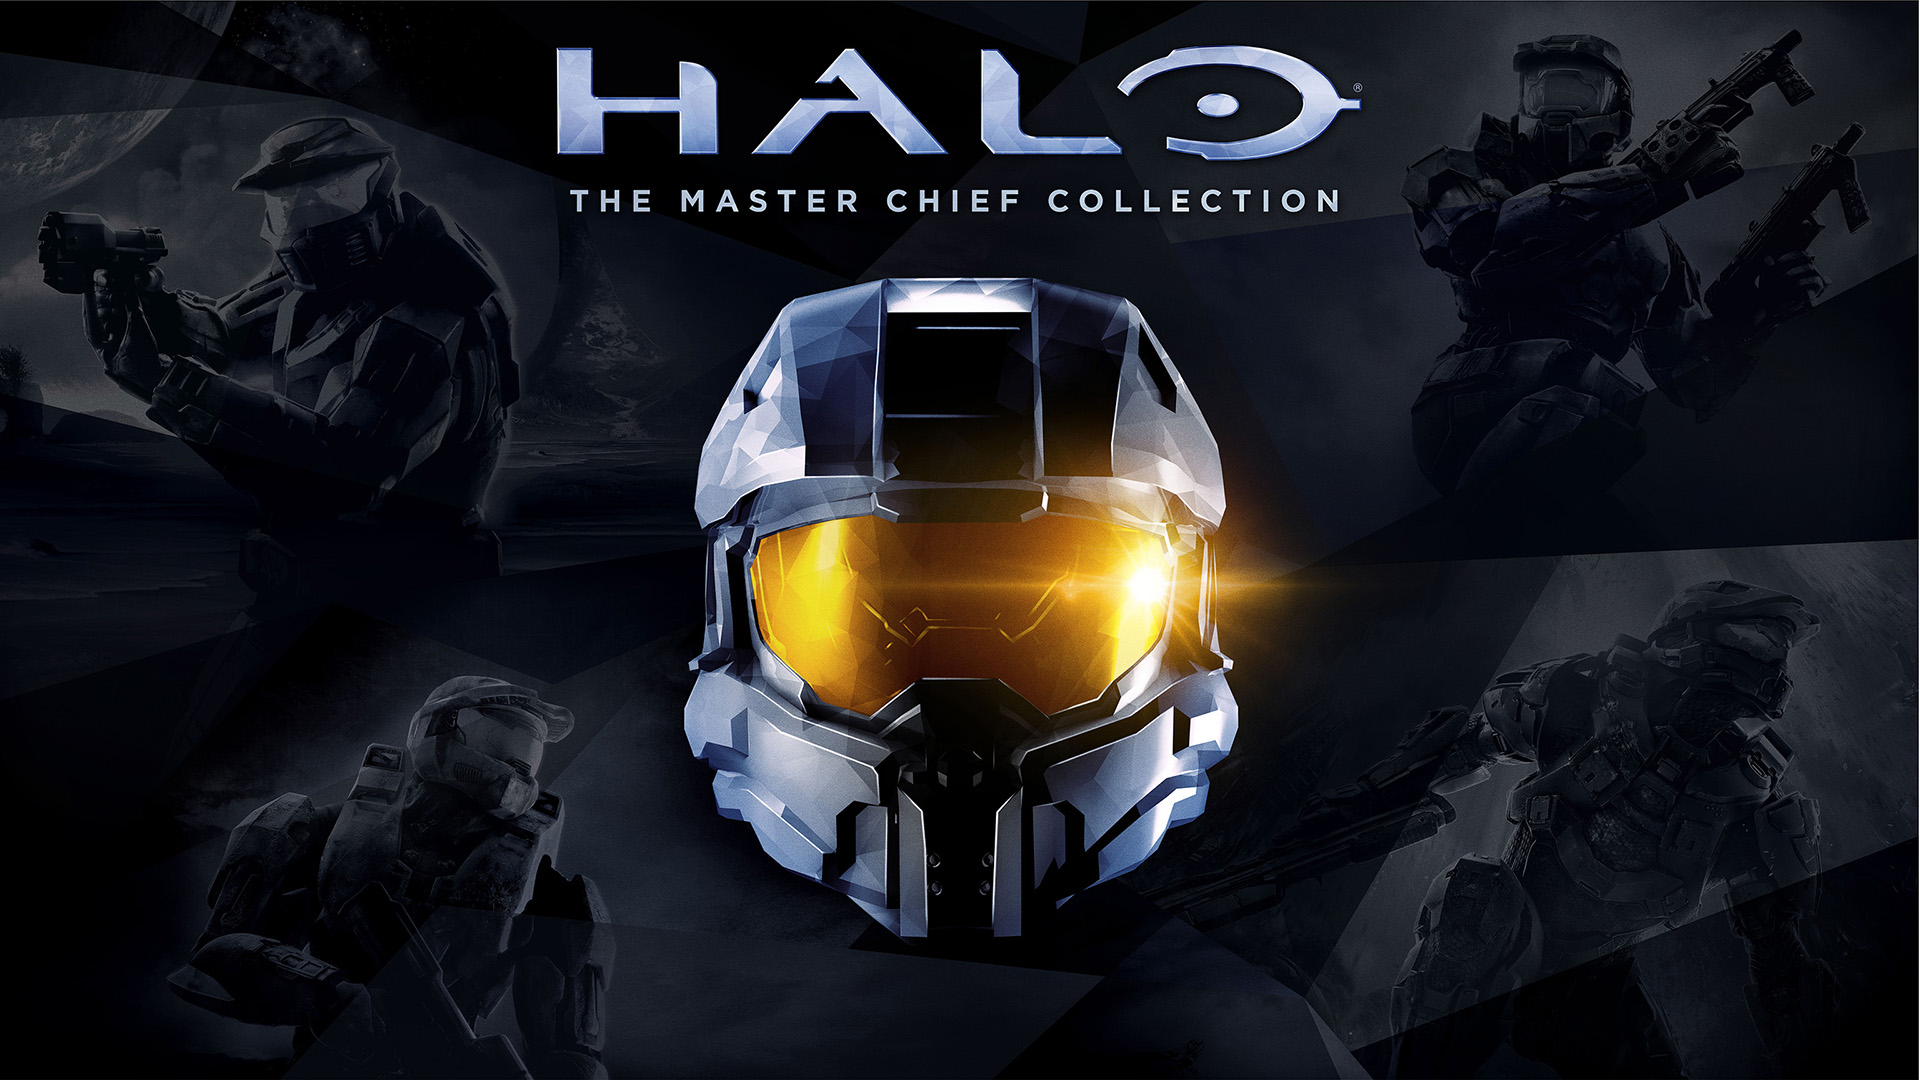 إطلاق تحديث لطور الأونلاين للعبة Halo The Master Chief Collection لحل مشاكل اللعب الجماعى والإنتظار لفترات طويلة